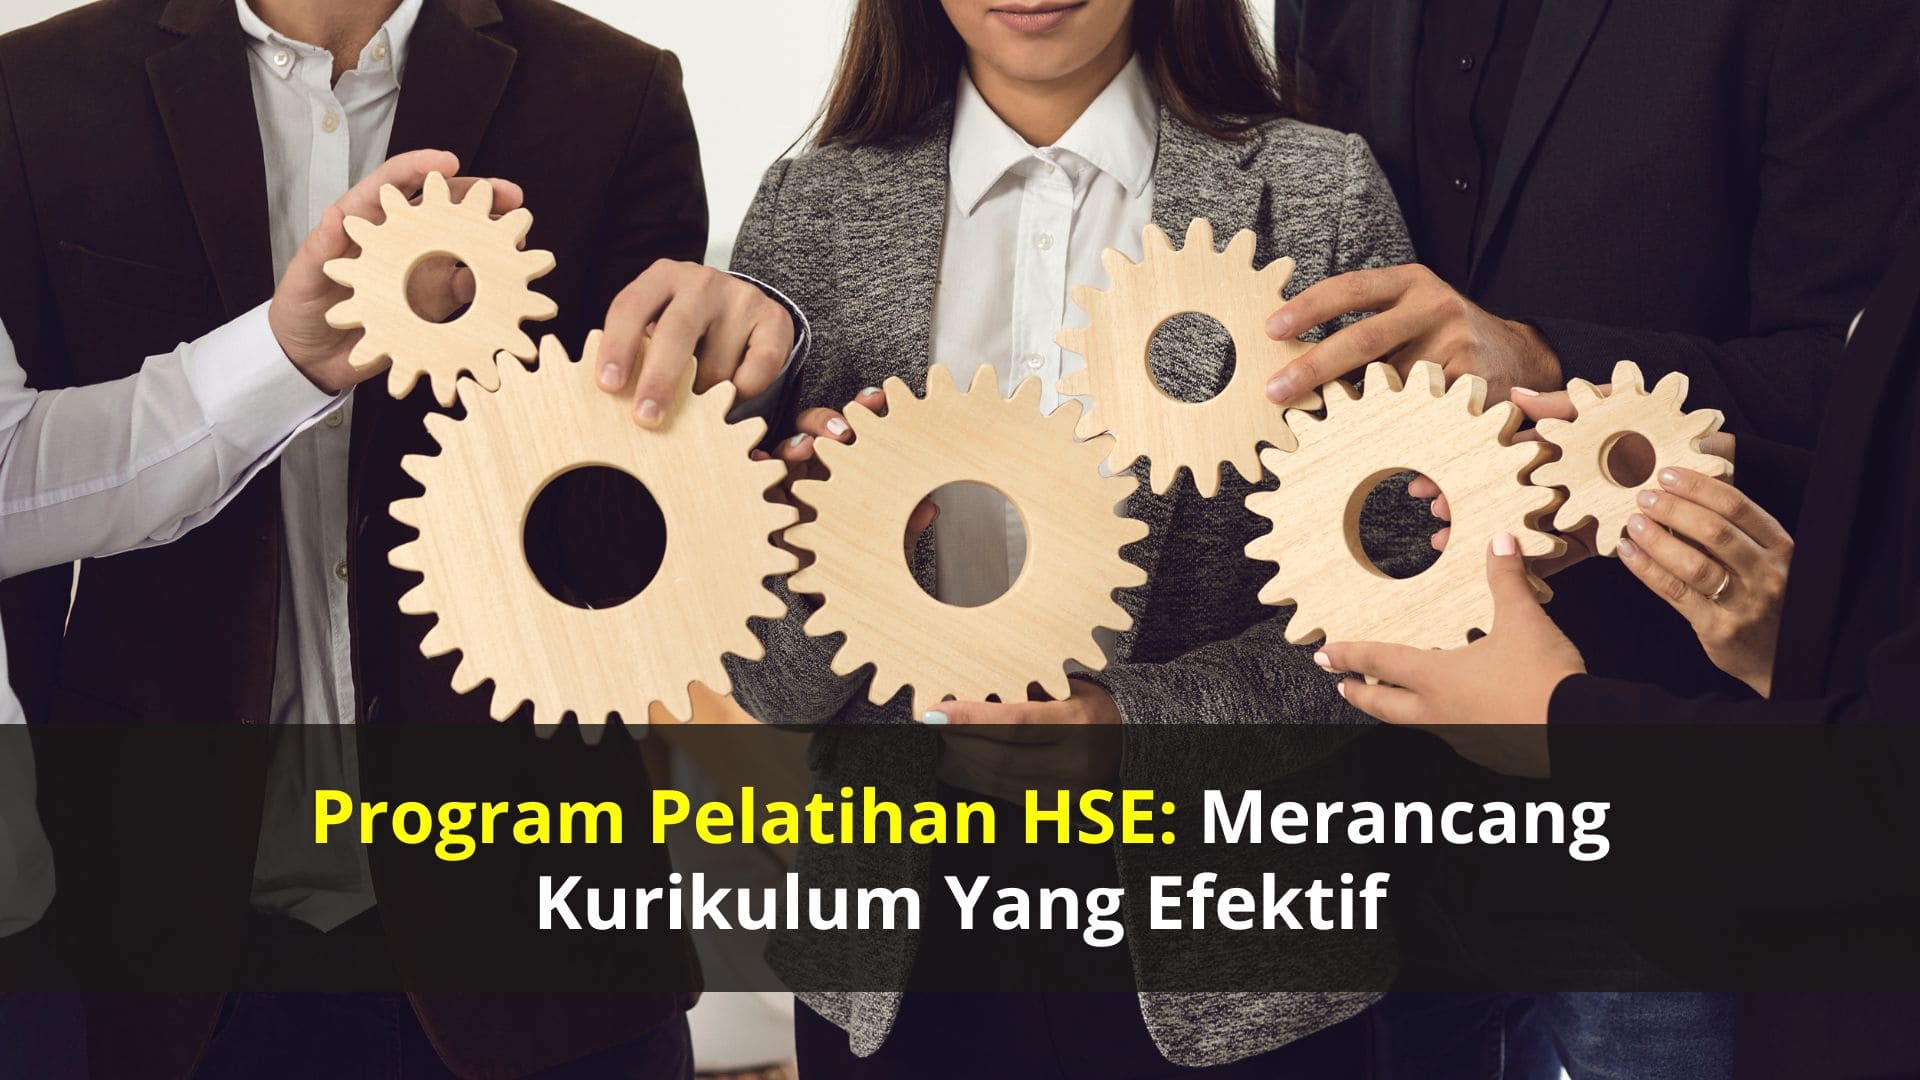 Program Pelatihan HSE: Merancang Kurikulum yang Efektif